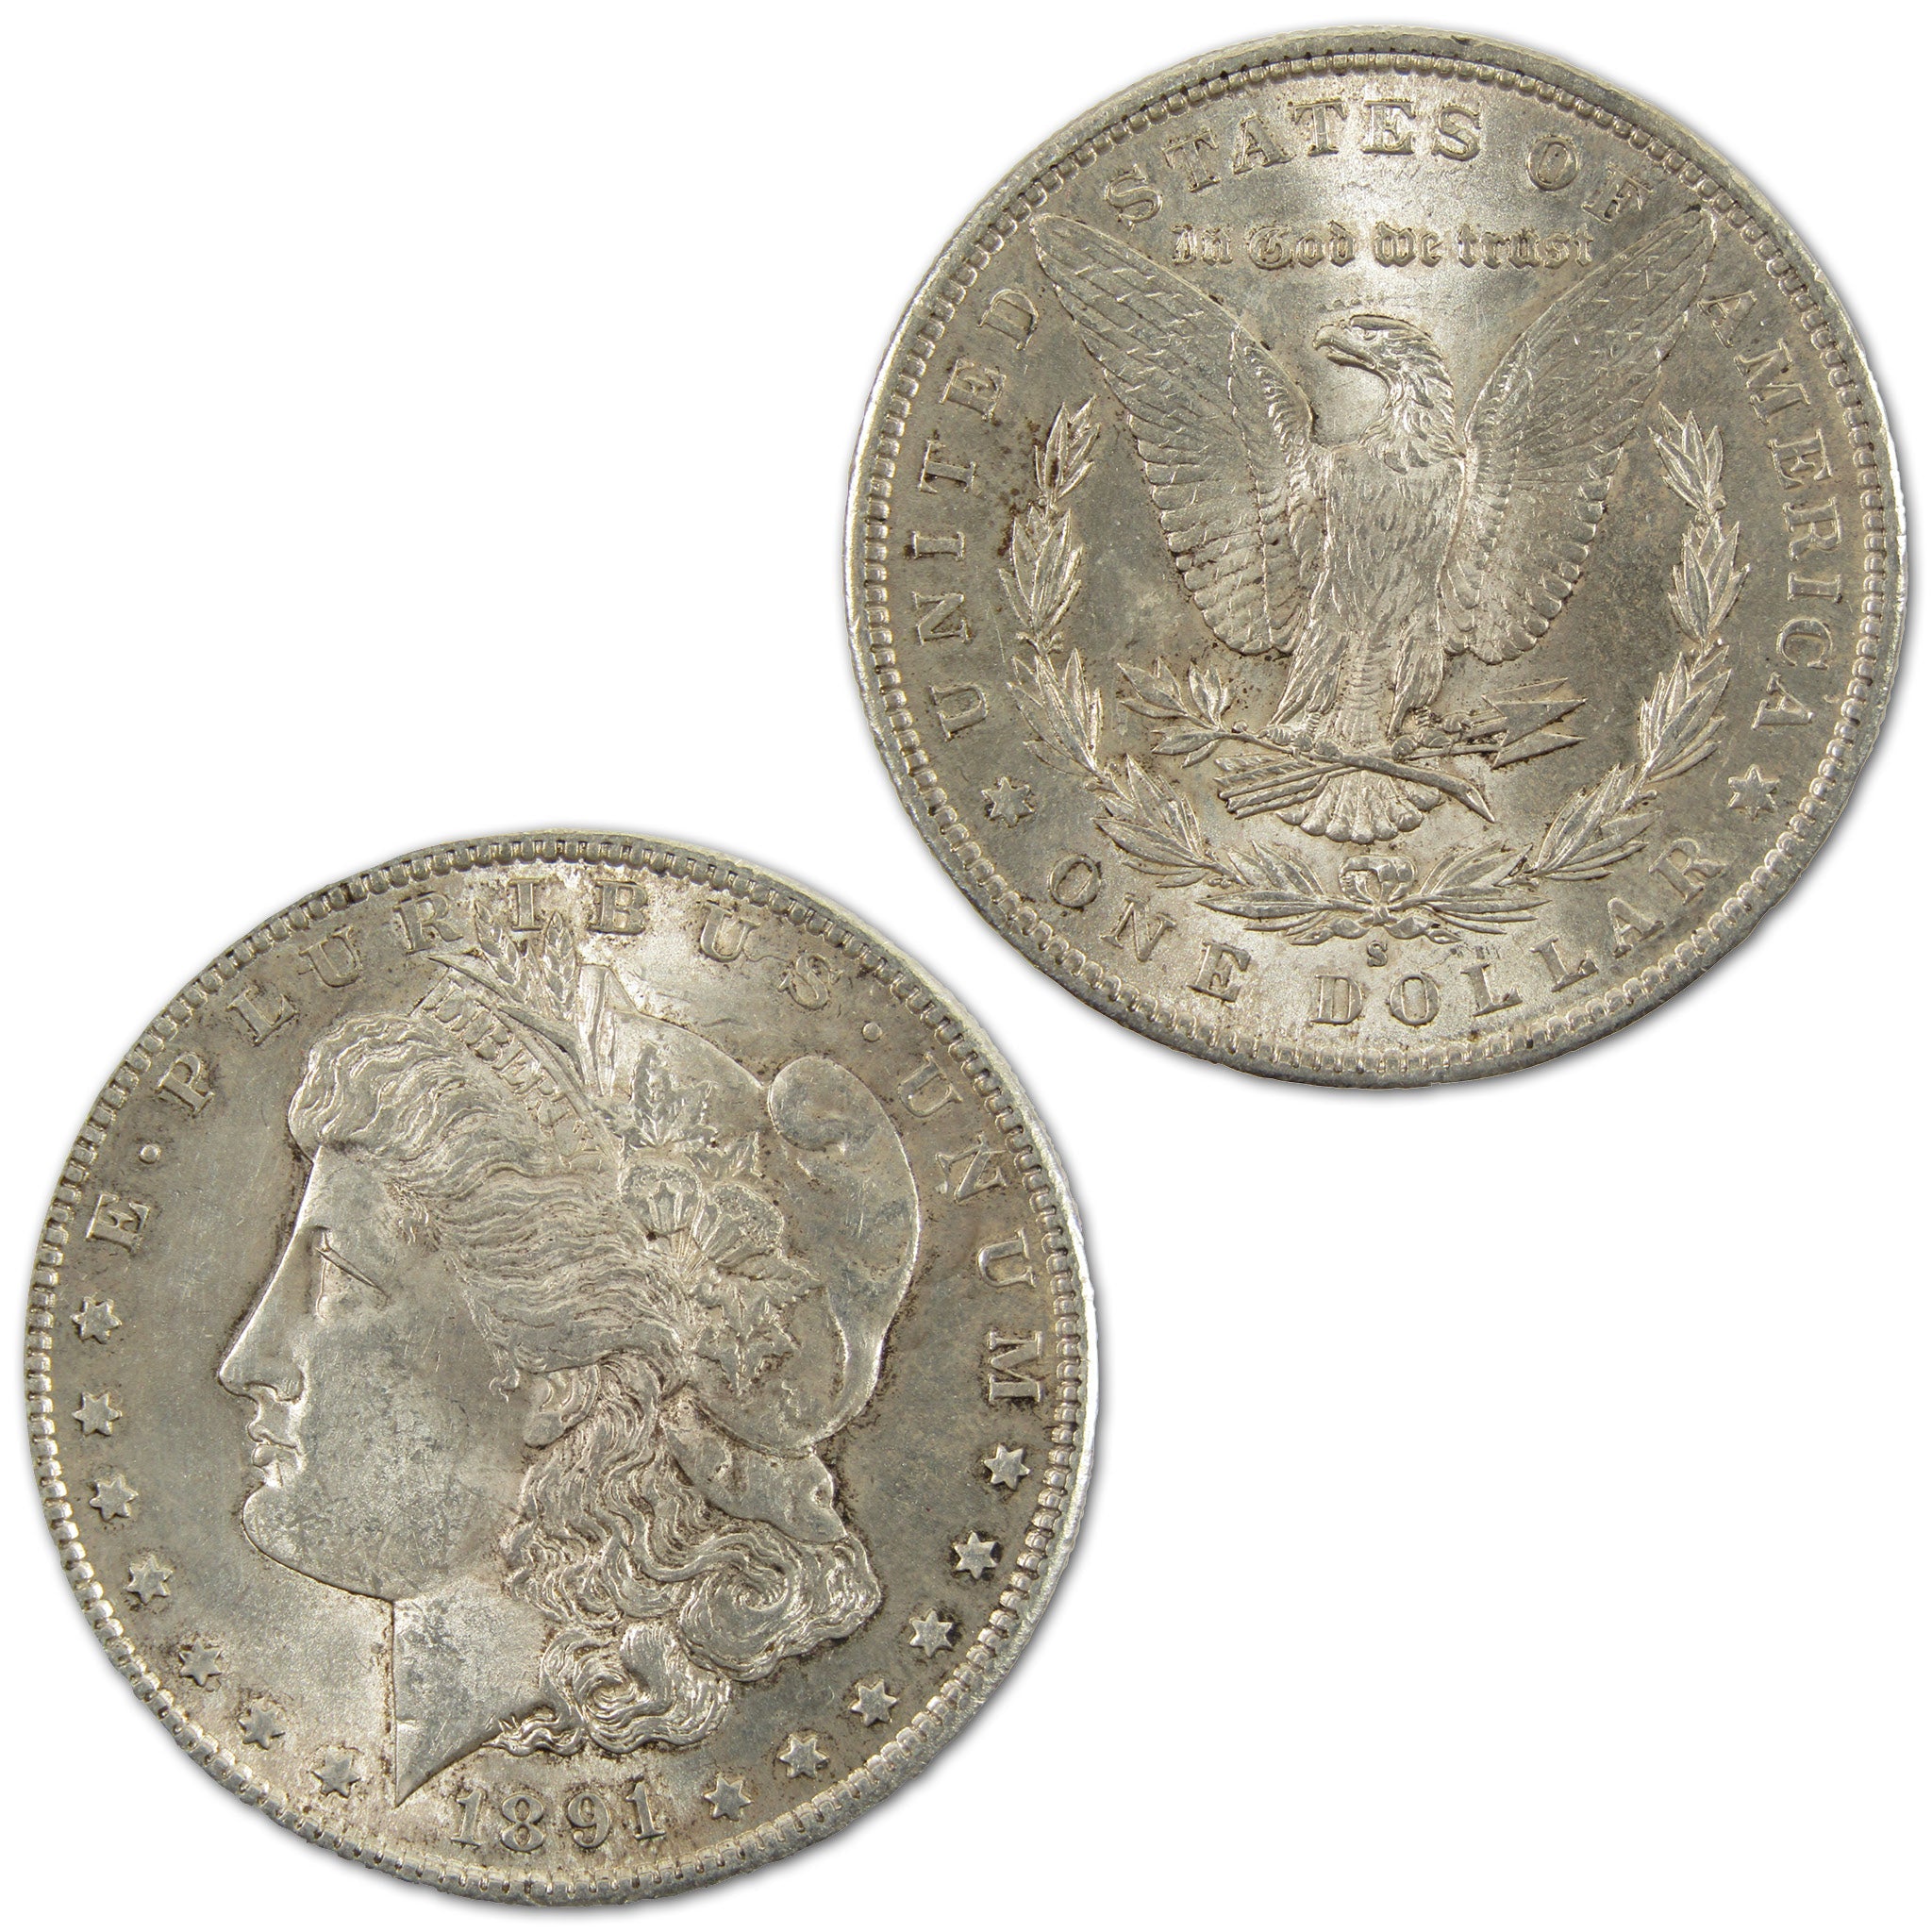 1891 S Morgan Dollar Borderline Uncirculated Silver $1 Coin SKU:I10754 - Morgan coin - Morgan silver dollar - Morgan silver dollar for sale - Profile Coins &amp; Collectibles